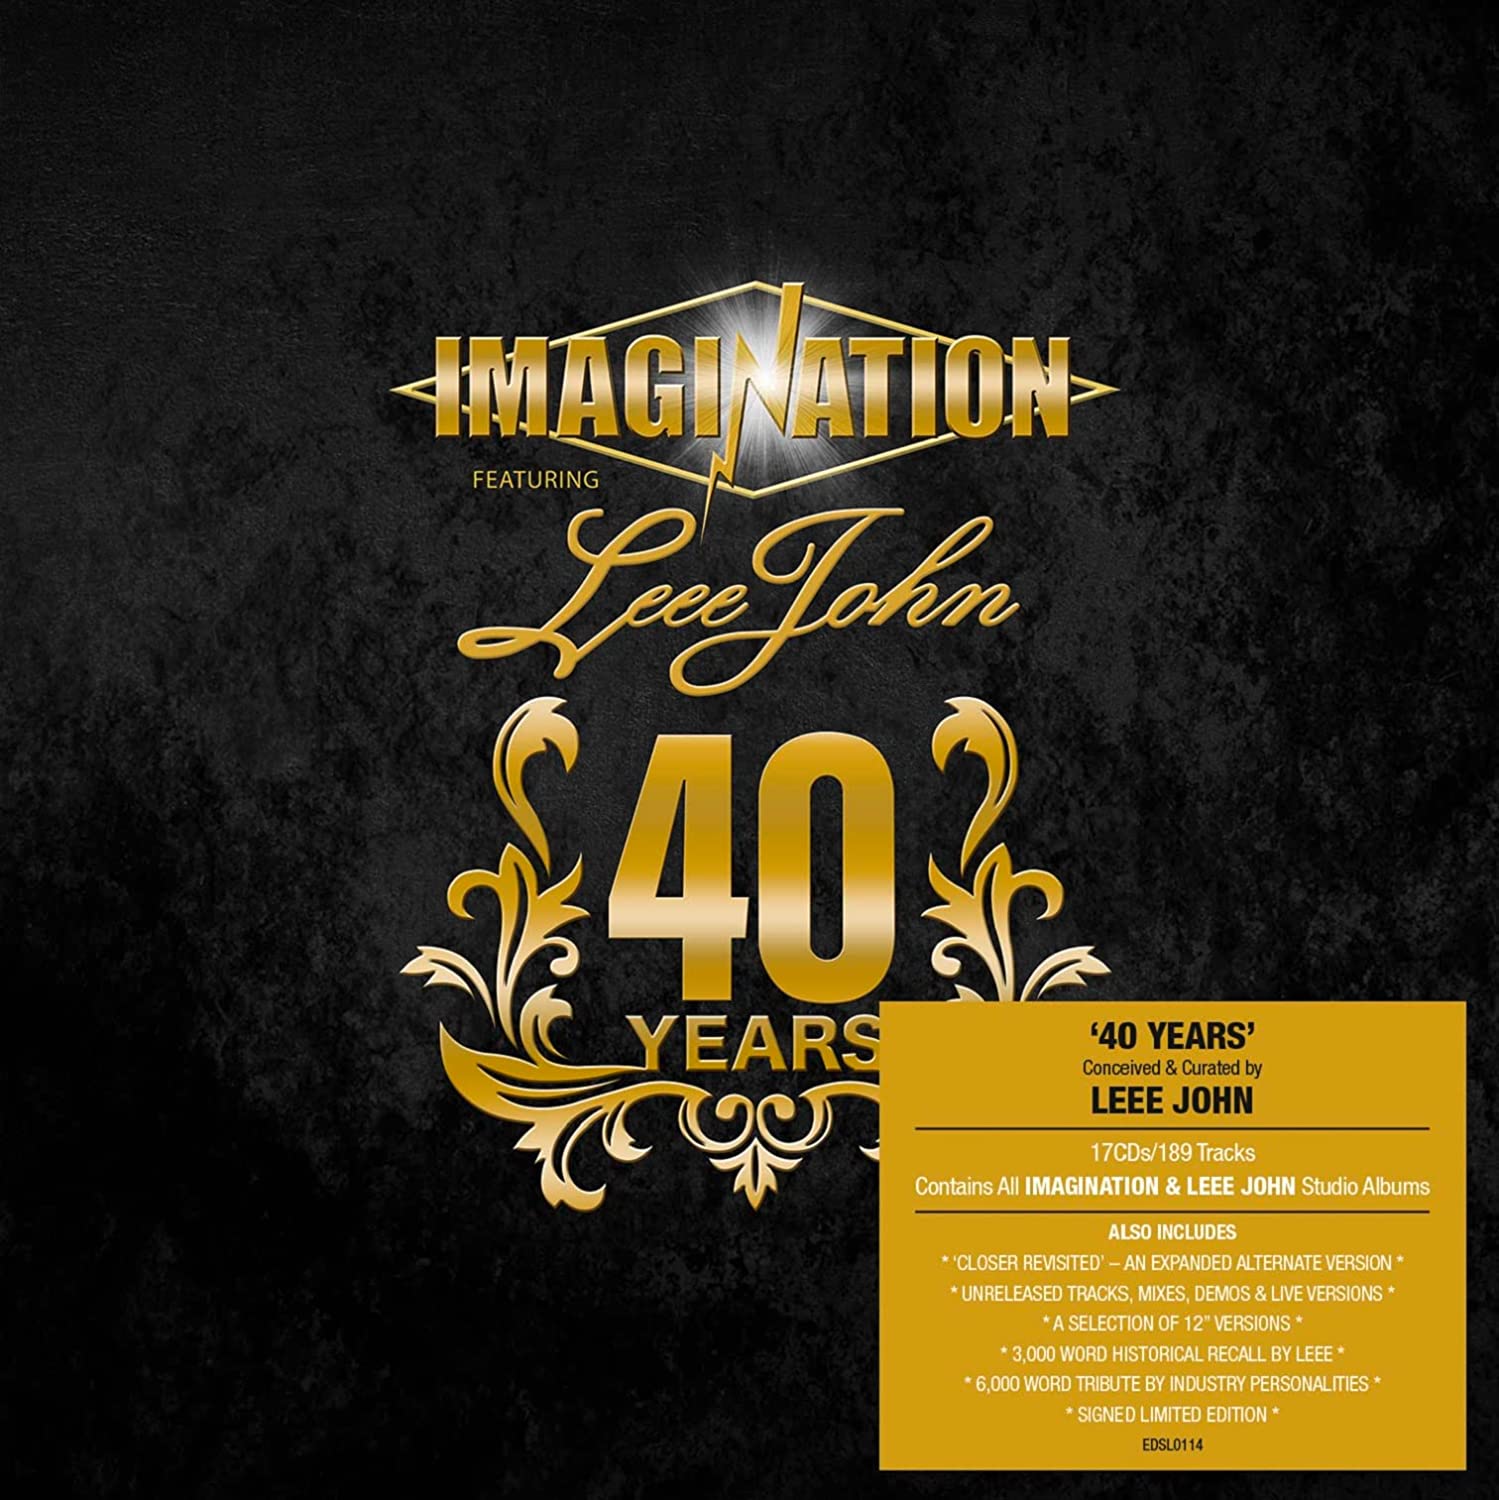 Imagination featuring Leee John / 40 Years – SuperDeluxeEdition